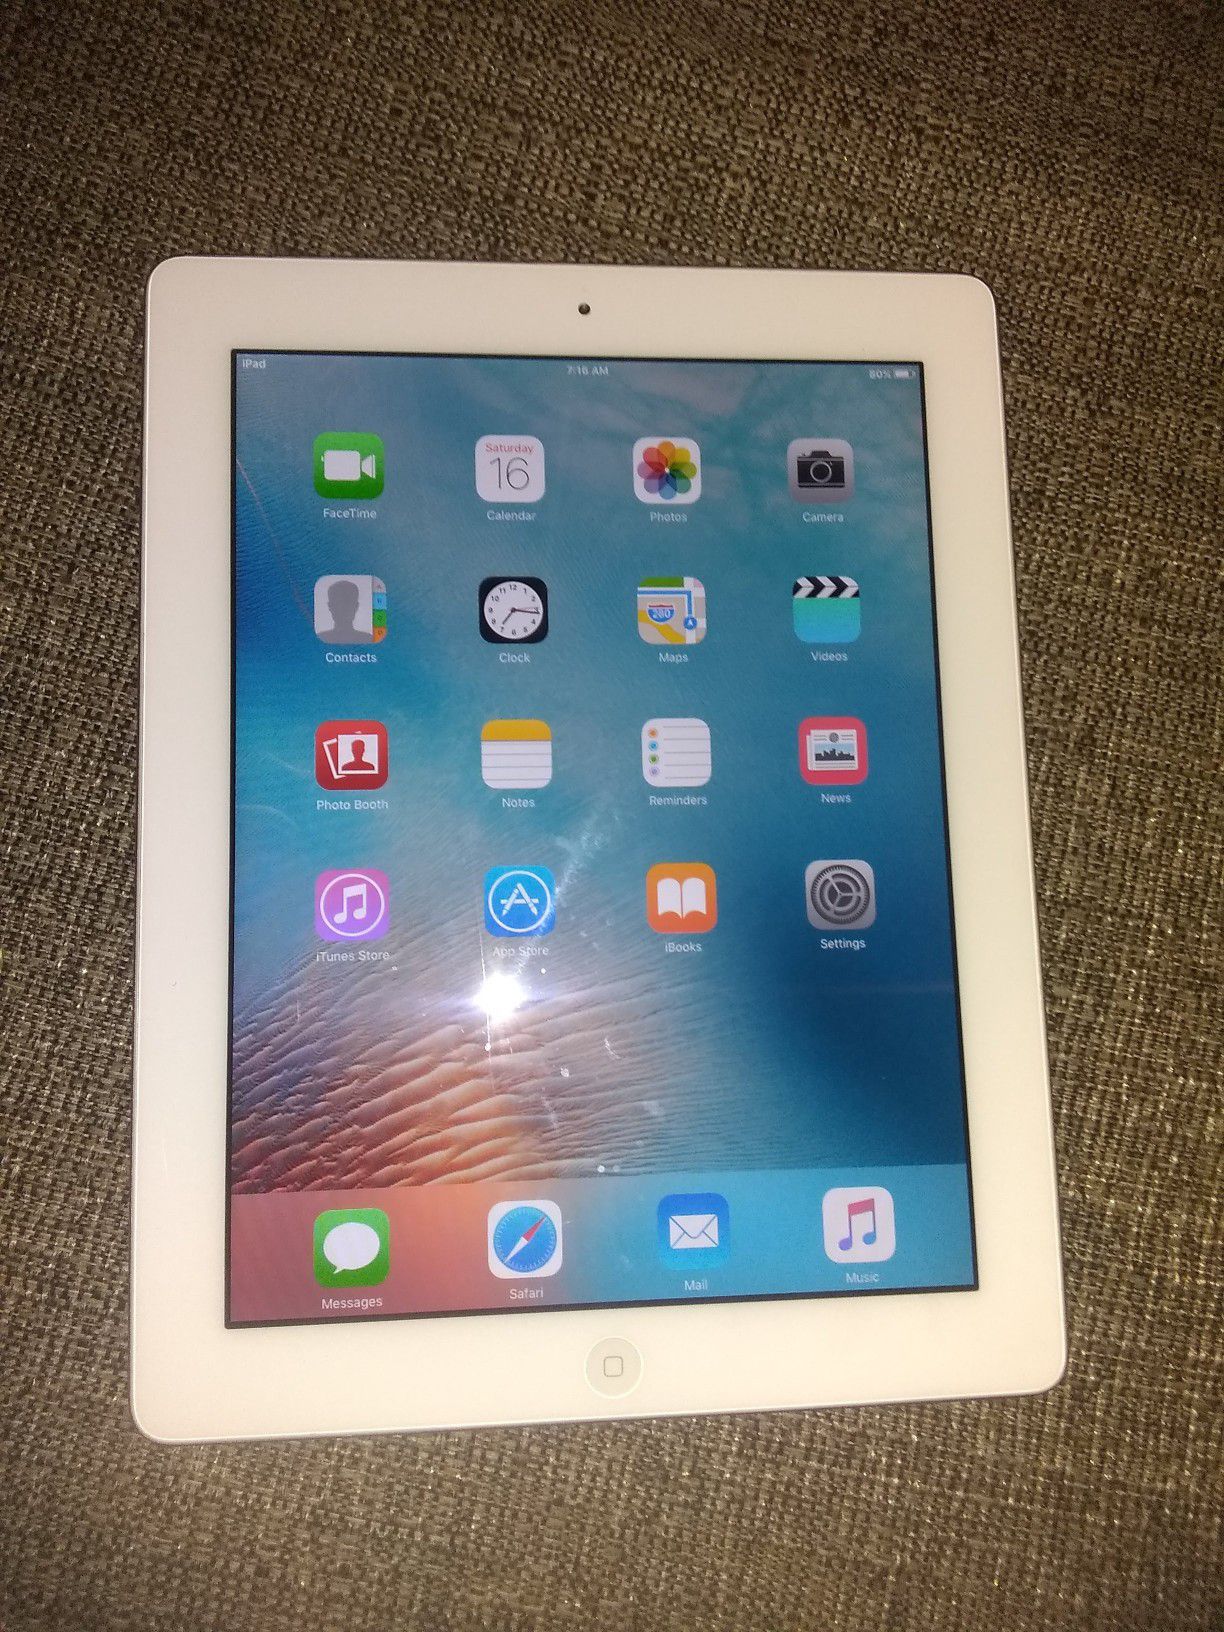 Apple iPad 2 Like New